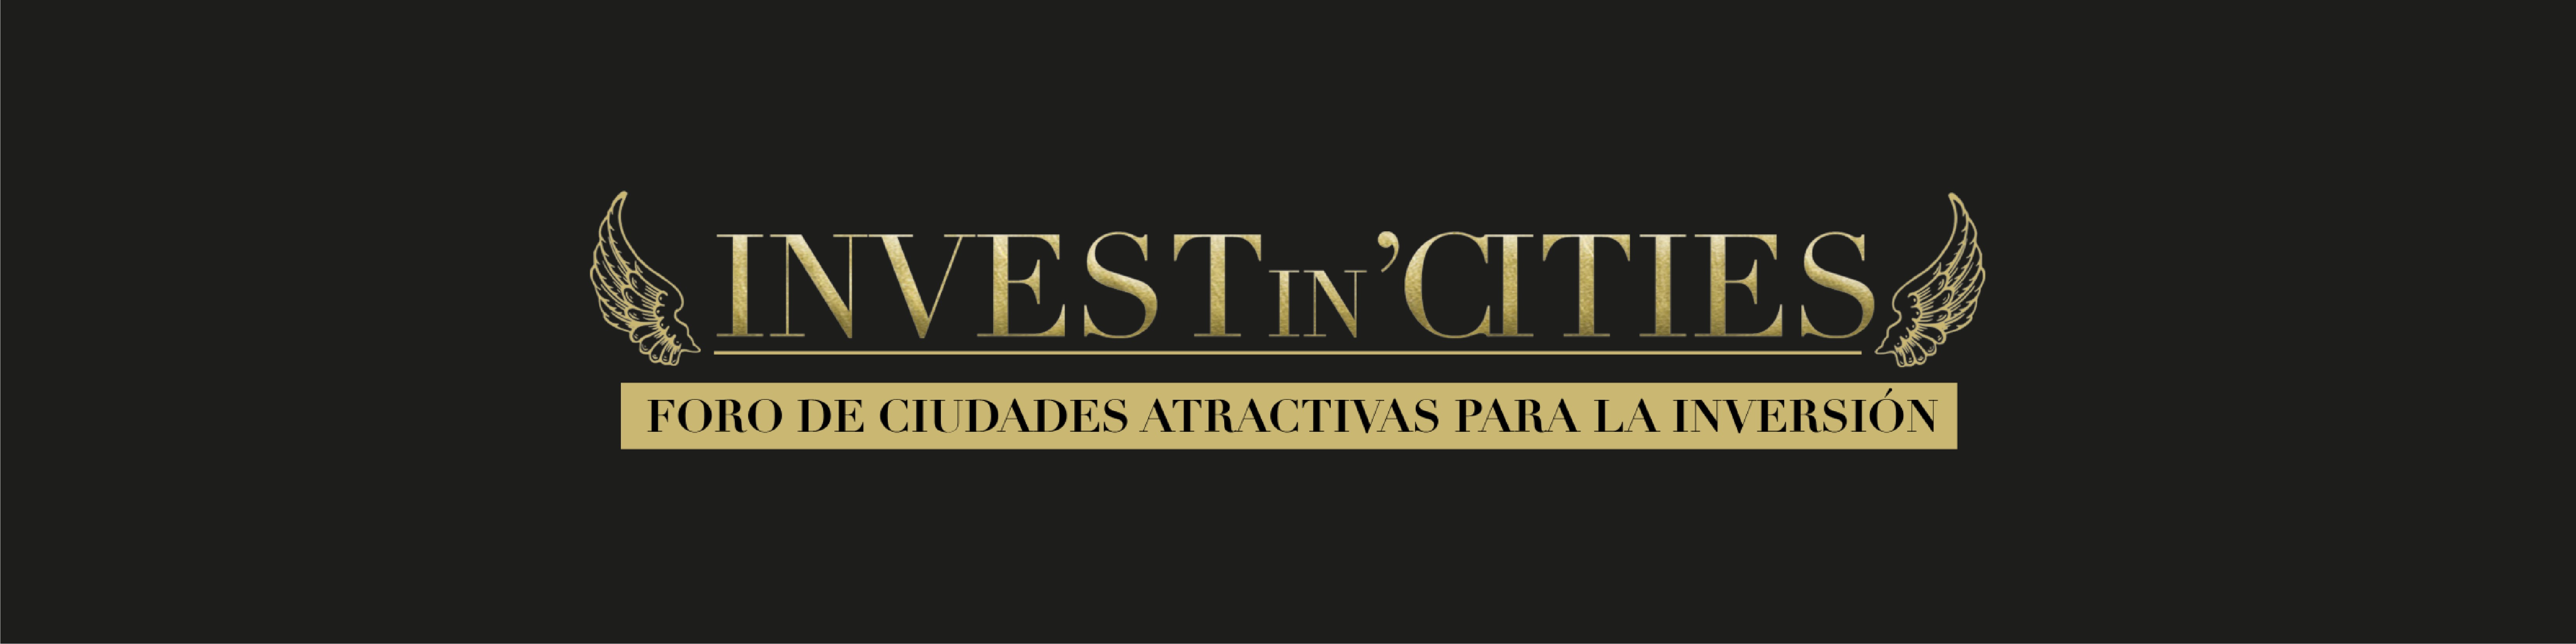 Agenda Institucional Alcaldesa: Congreso "Invest in Cities"